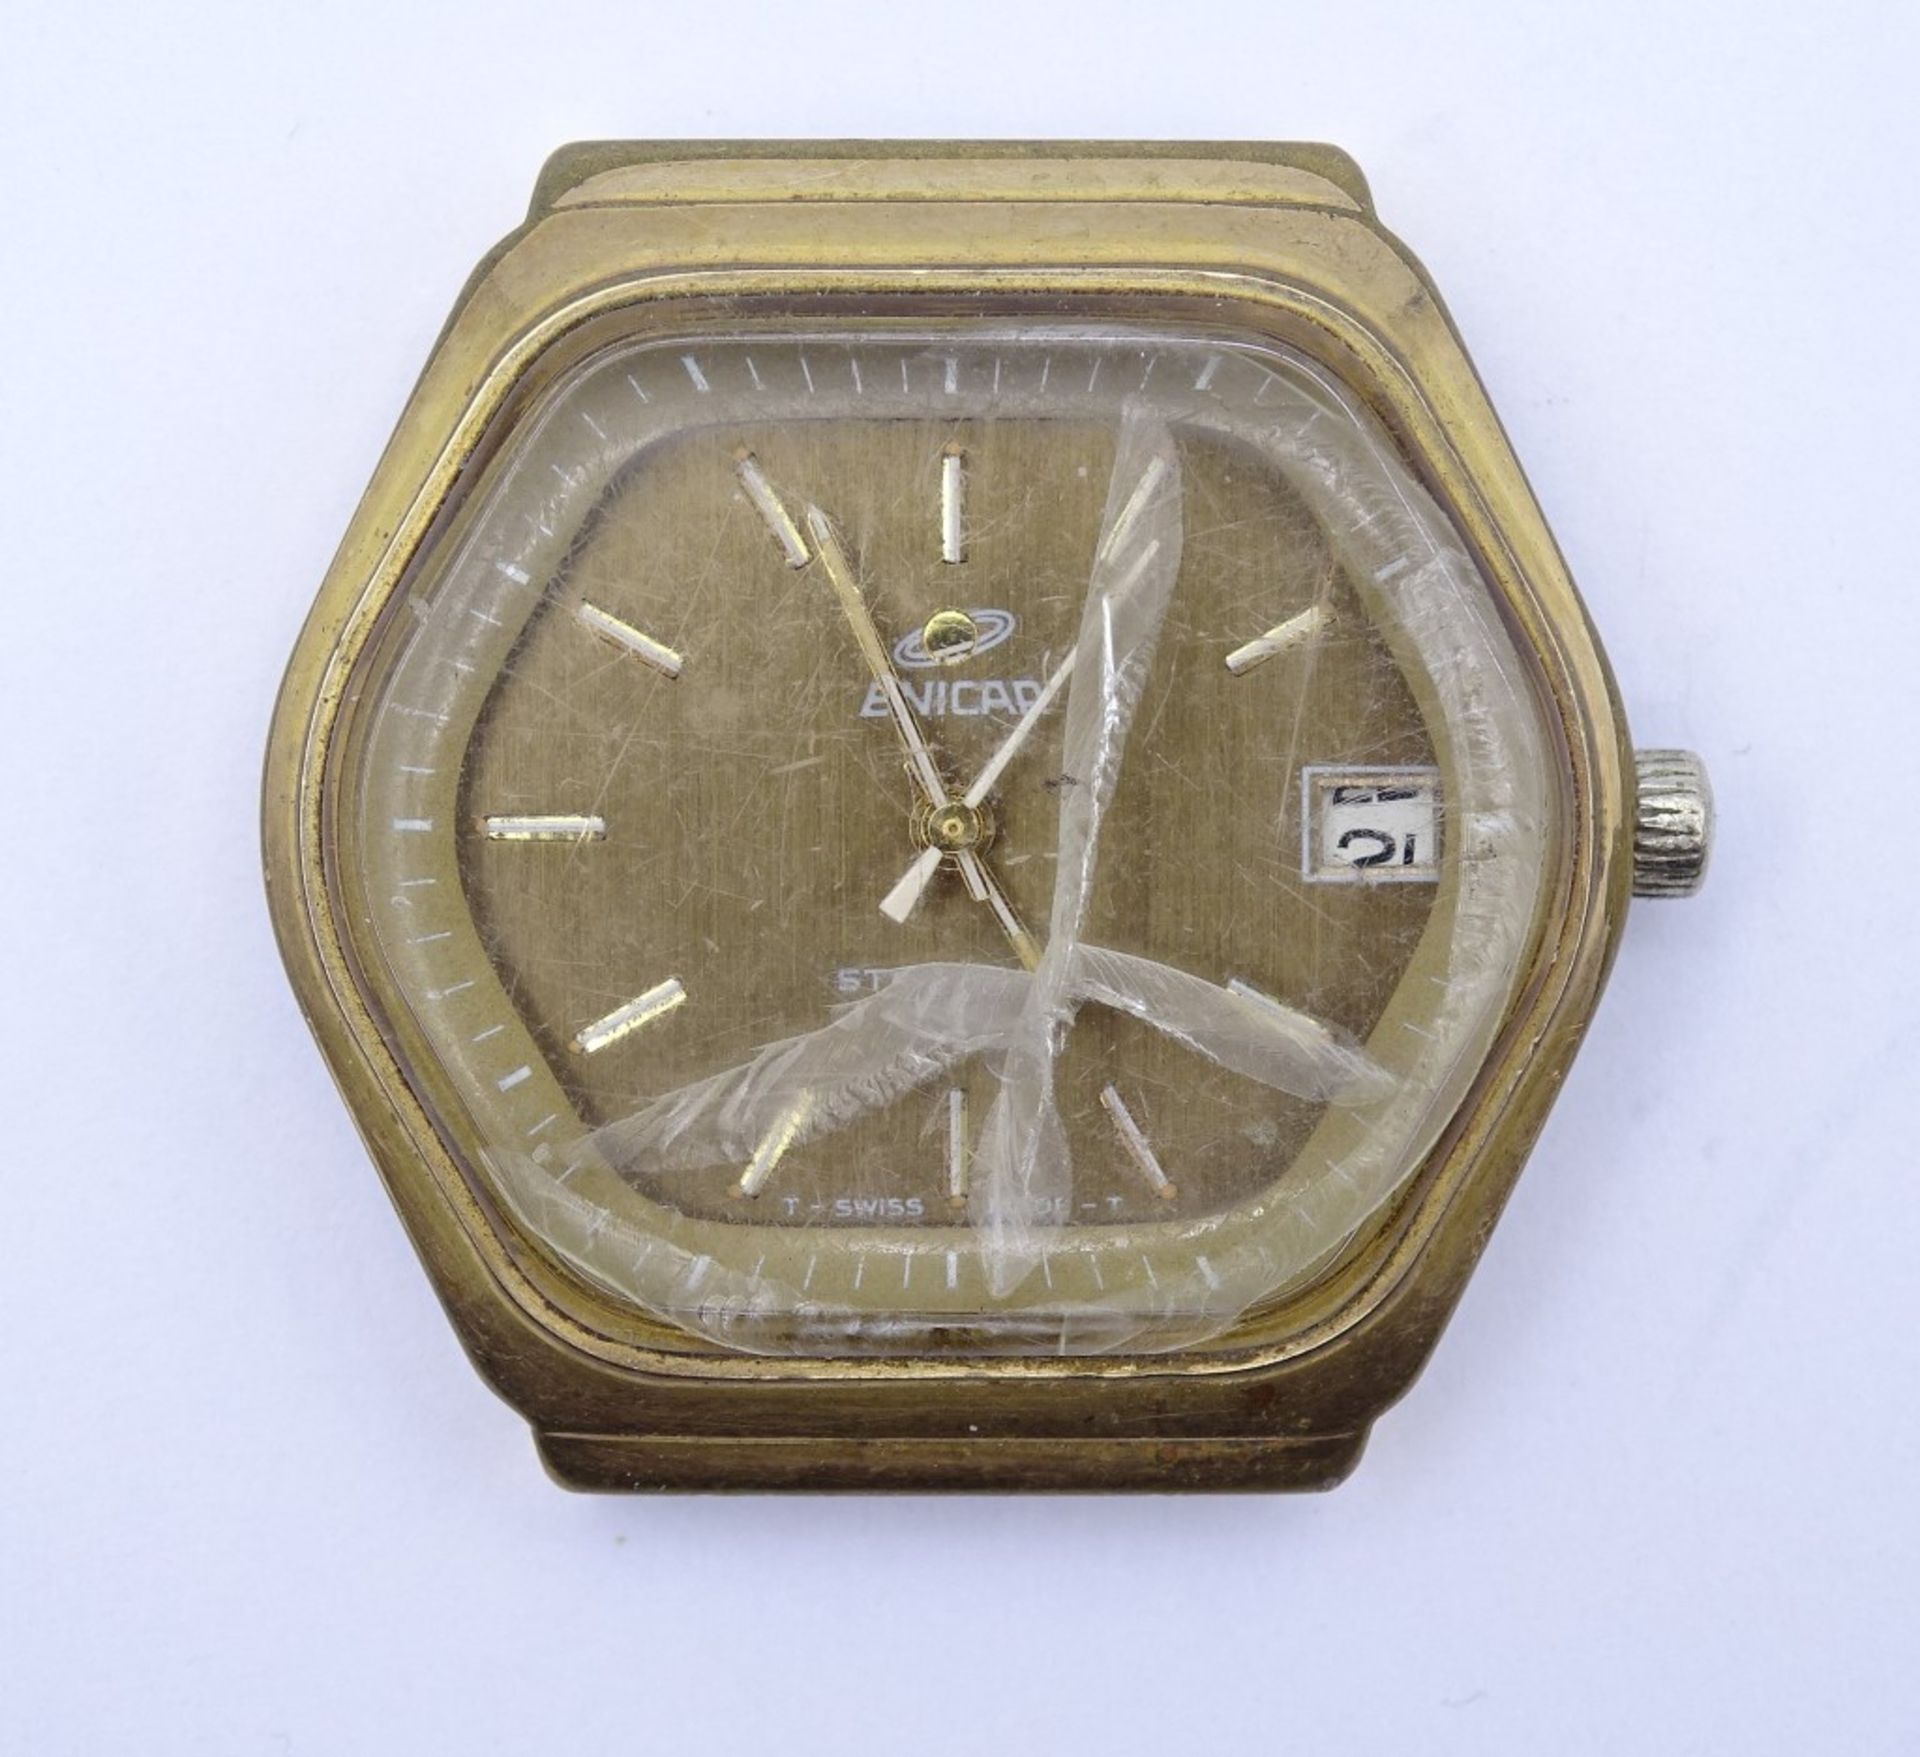 Herren Armbanduhr Enicar MRO Star, 2367, Cal. 161, Werk läuft nur min.an, Glas beschädigt, 35x35mm, - Bild 3 aus 4